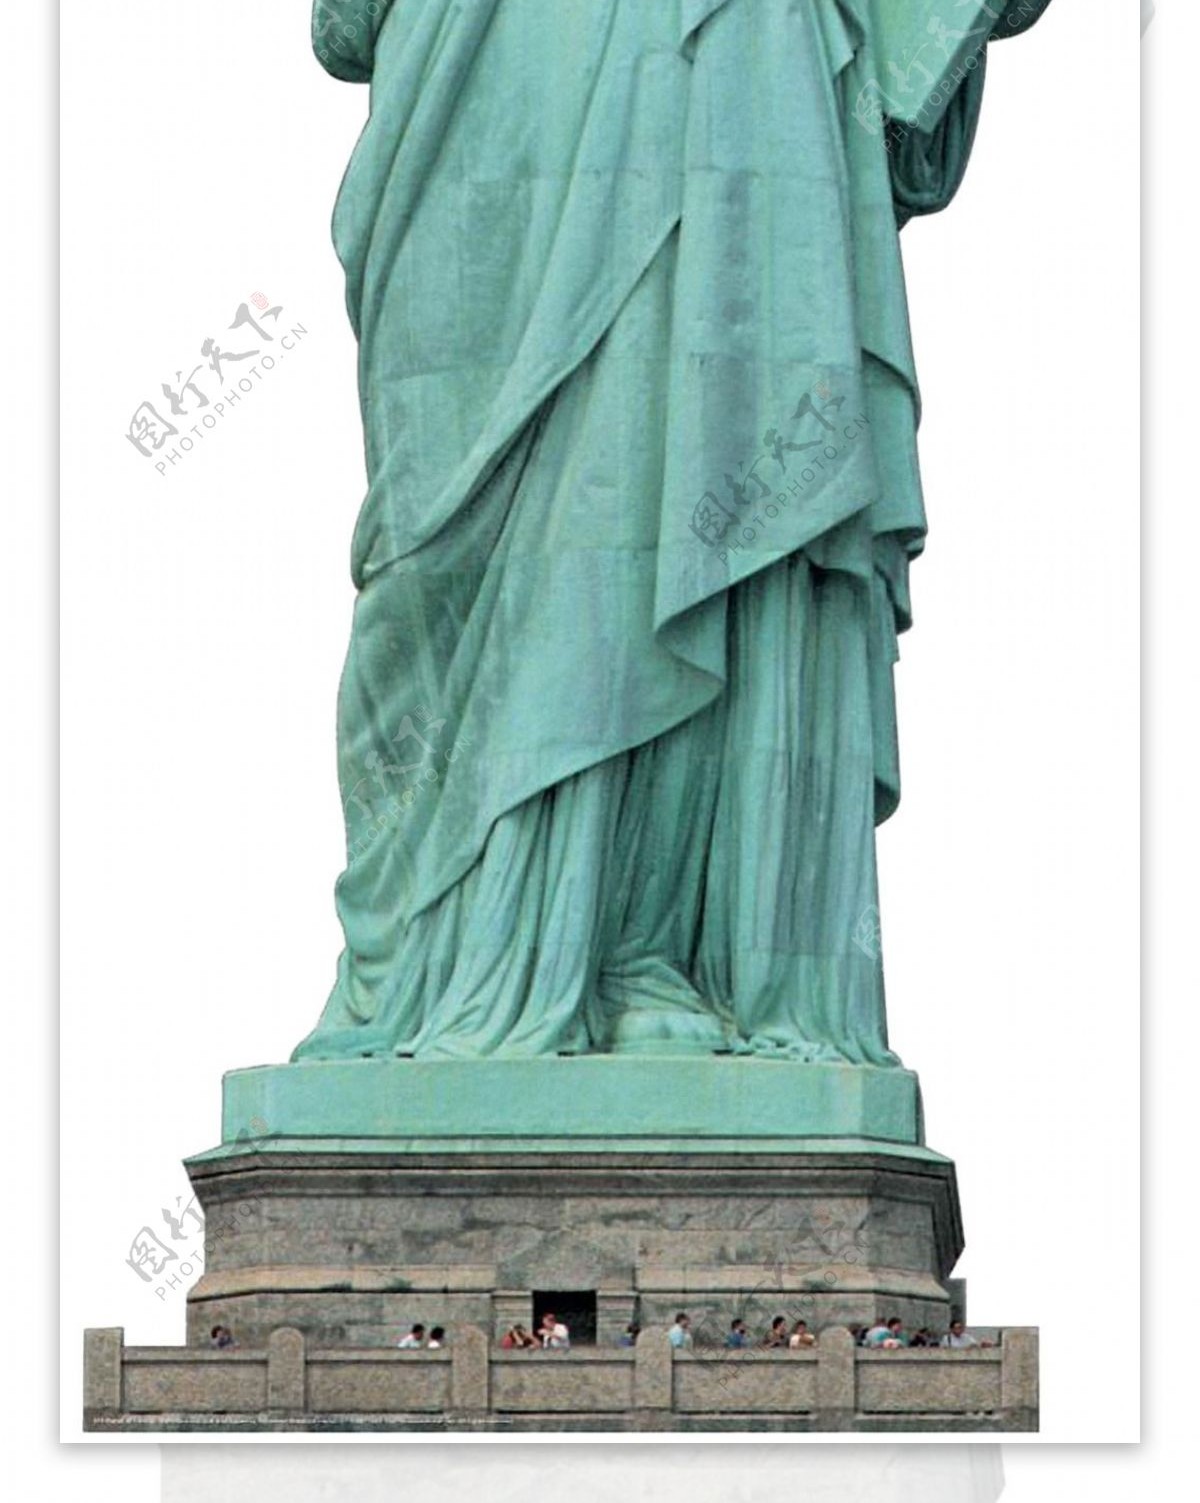 自由女神雕像正面图免抠png透明素材